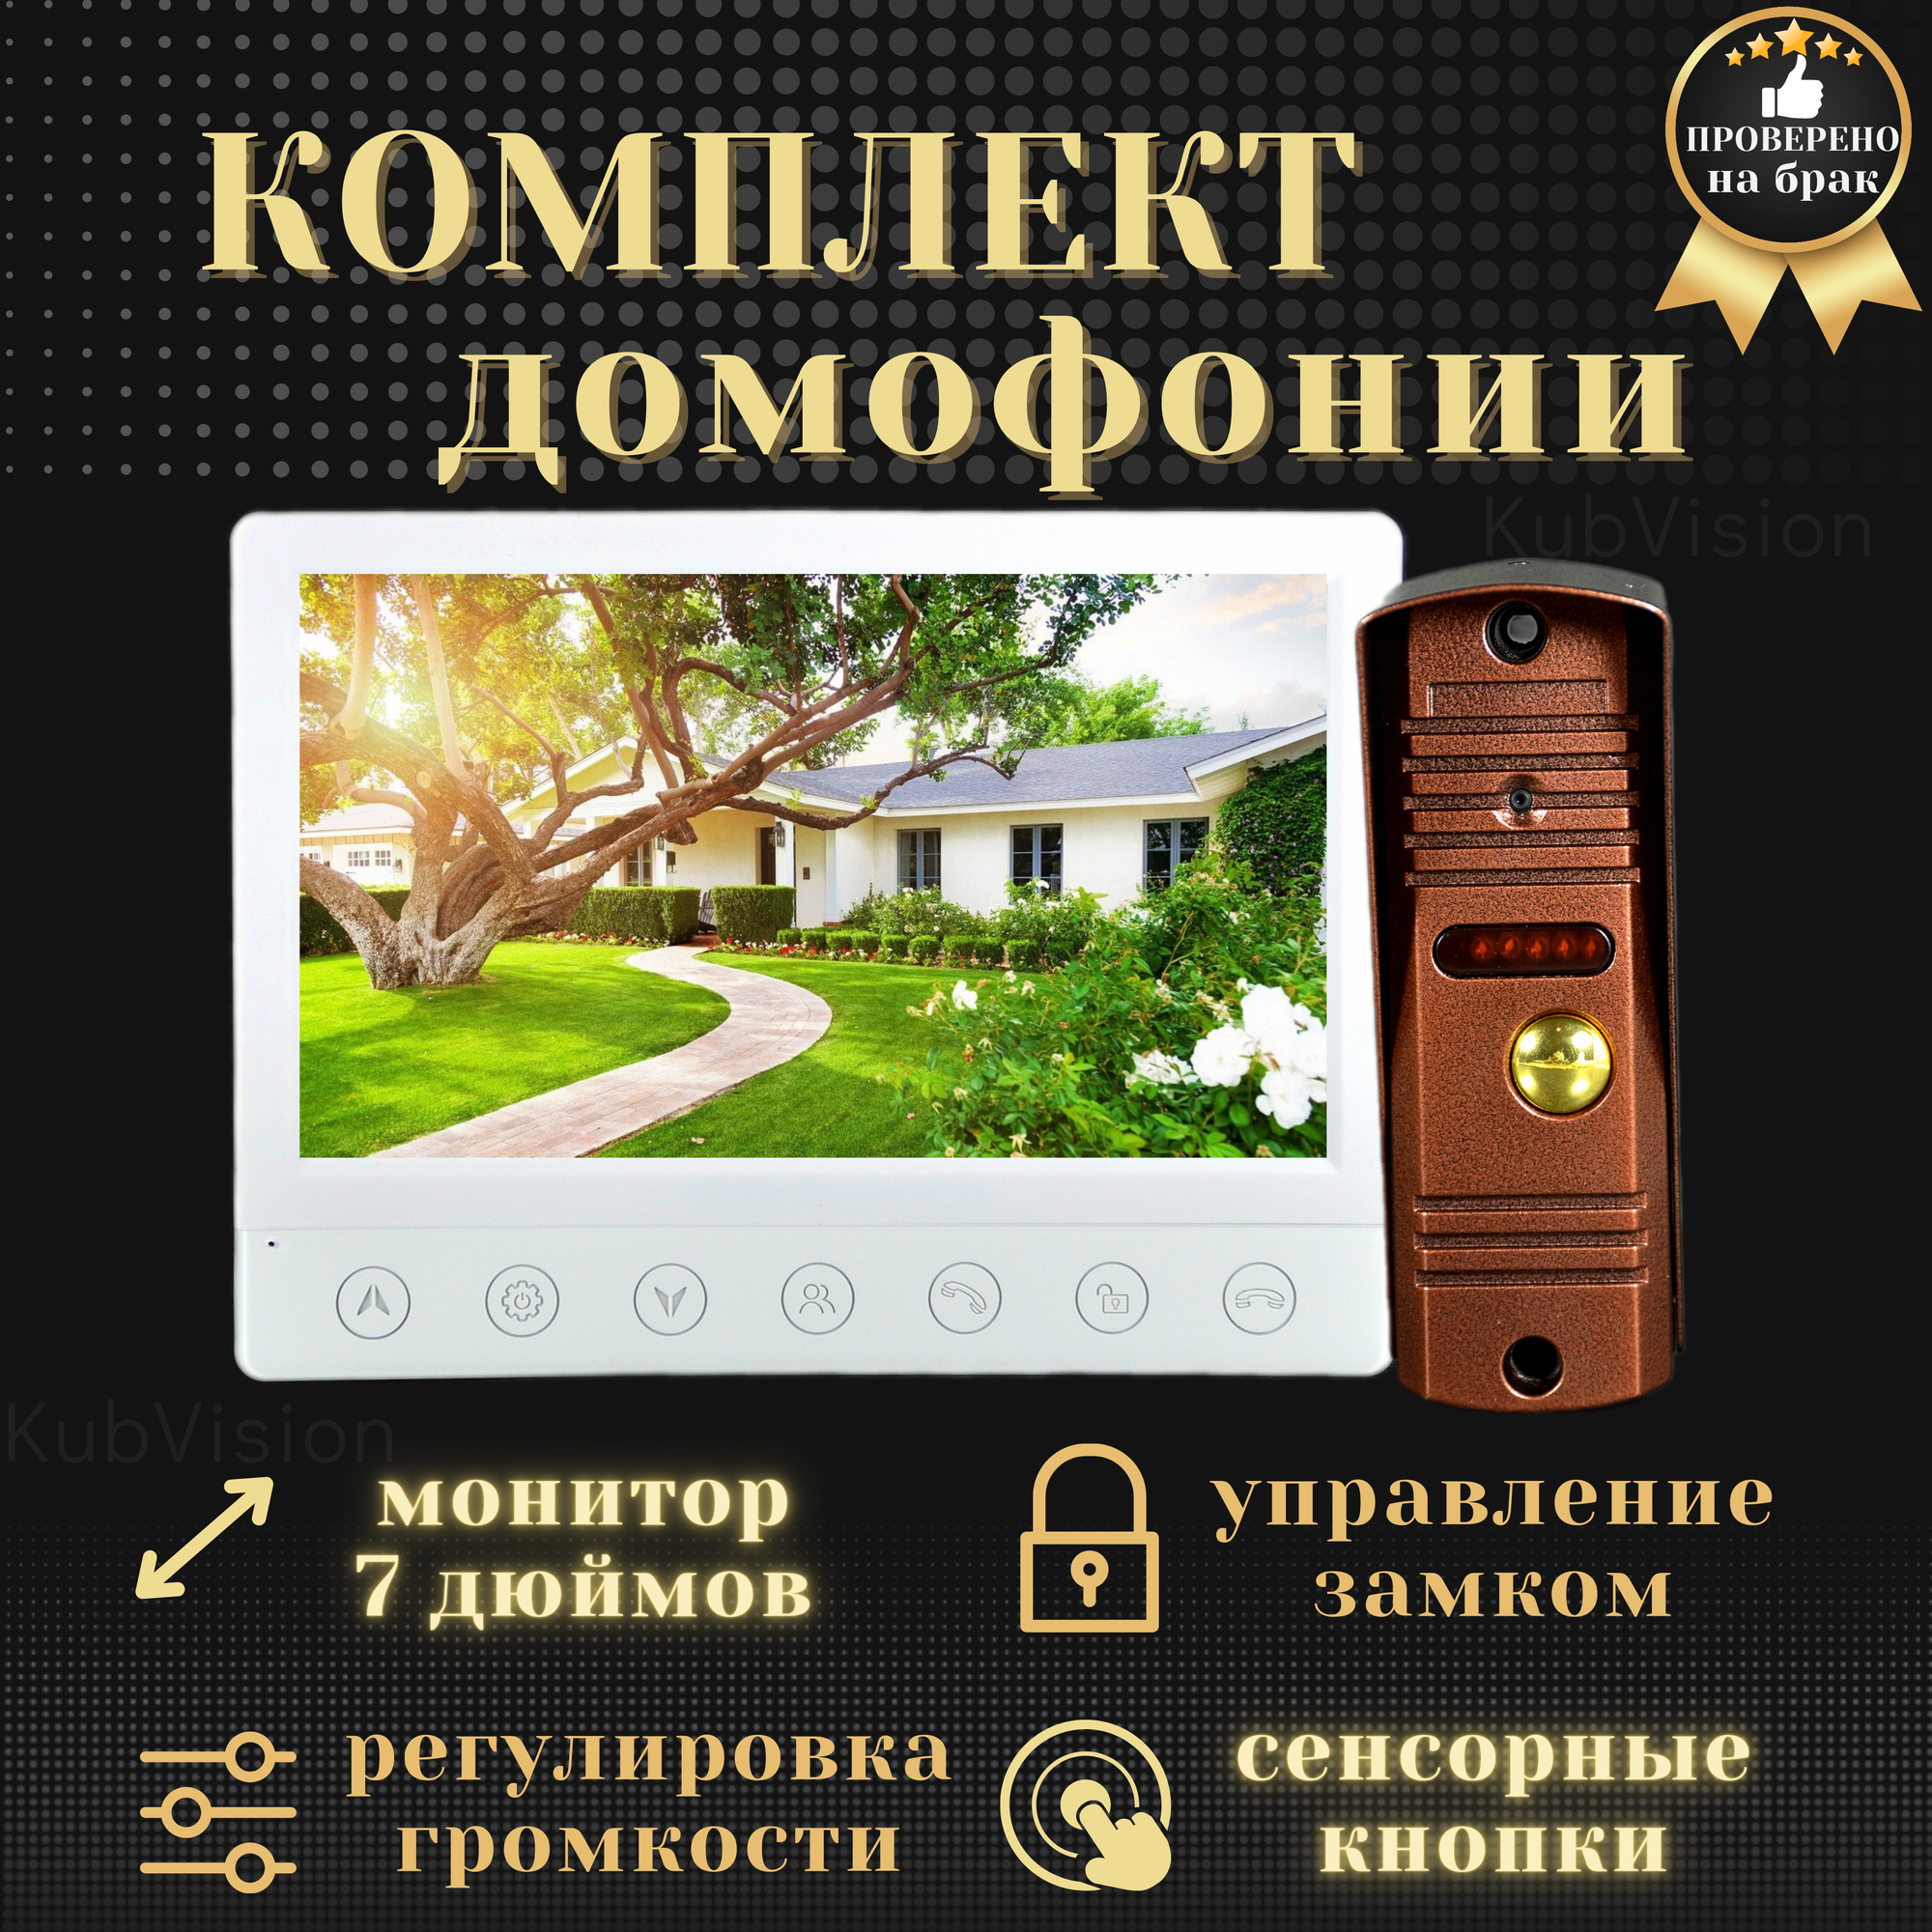 Комплект домофон с вызывной панелью KubVision 94717F+94201, видеодомофон и видеозвонок в одном, квартирный, для квартиры, для дома, цветной экран